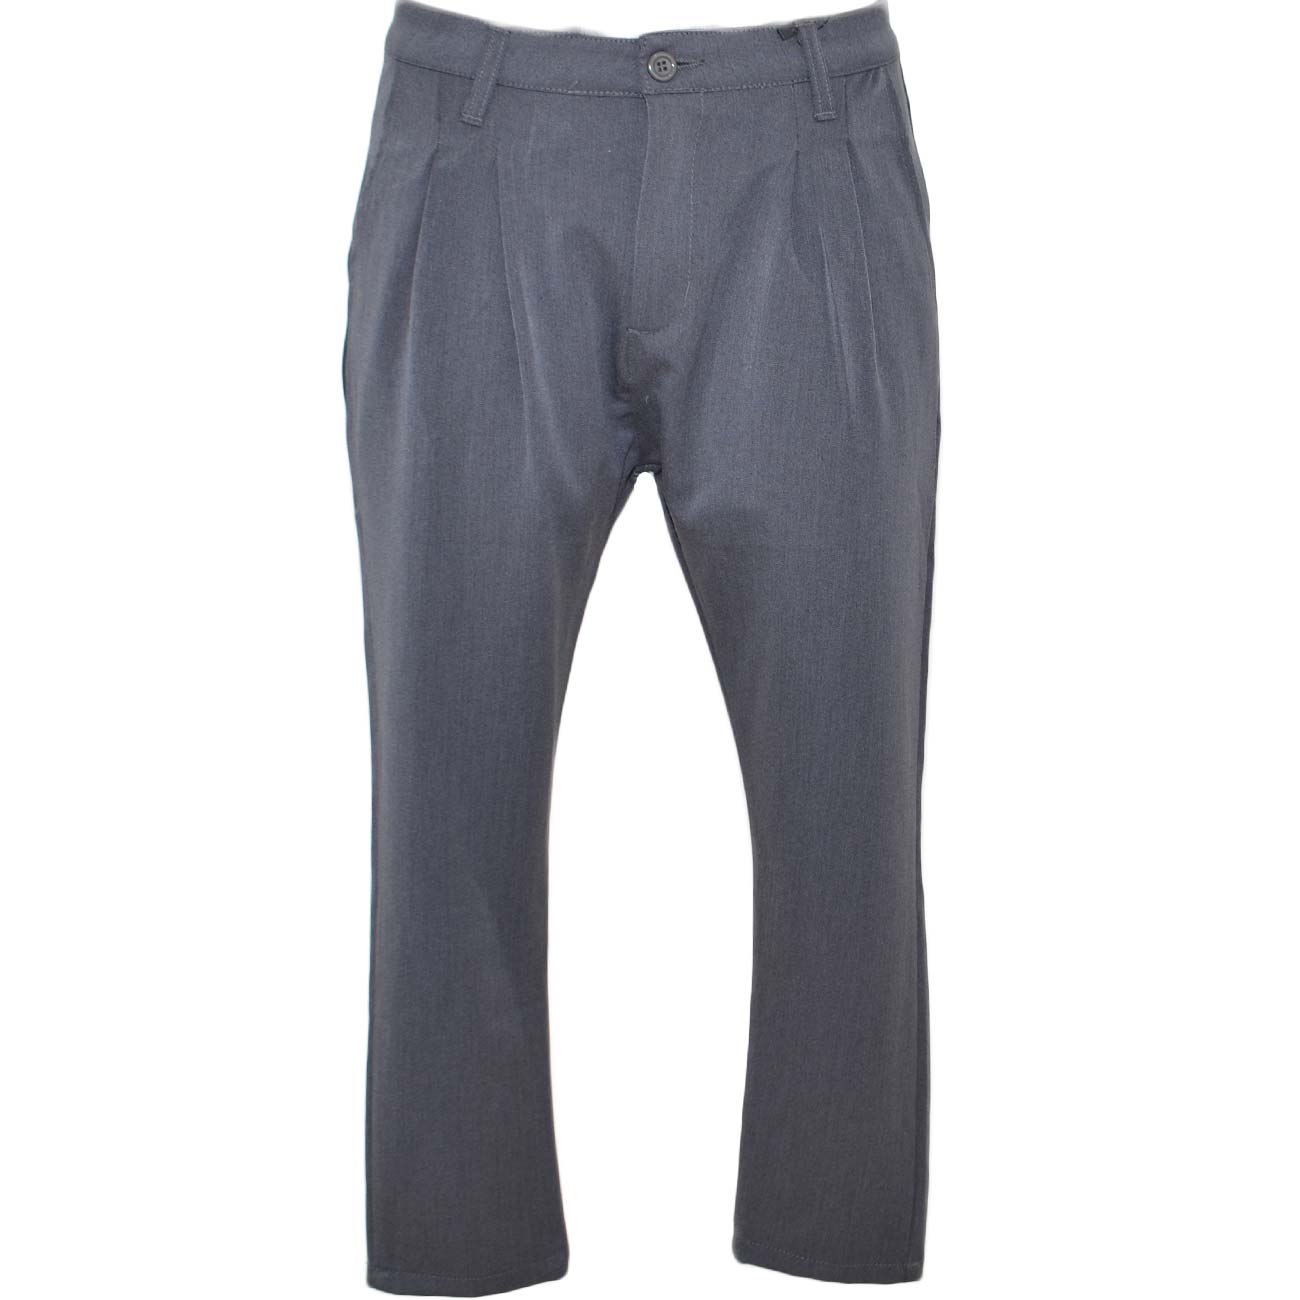 Pantaloni chino in puro cotone grigio a vita bassa chiusura con bottone e cerniera a due tasche moda linea basic .